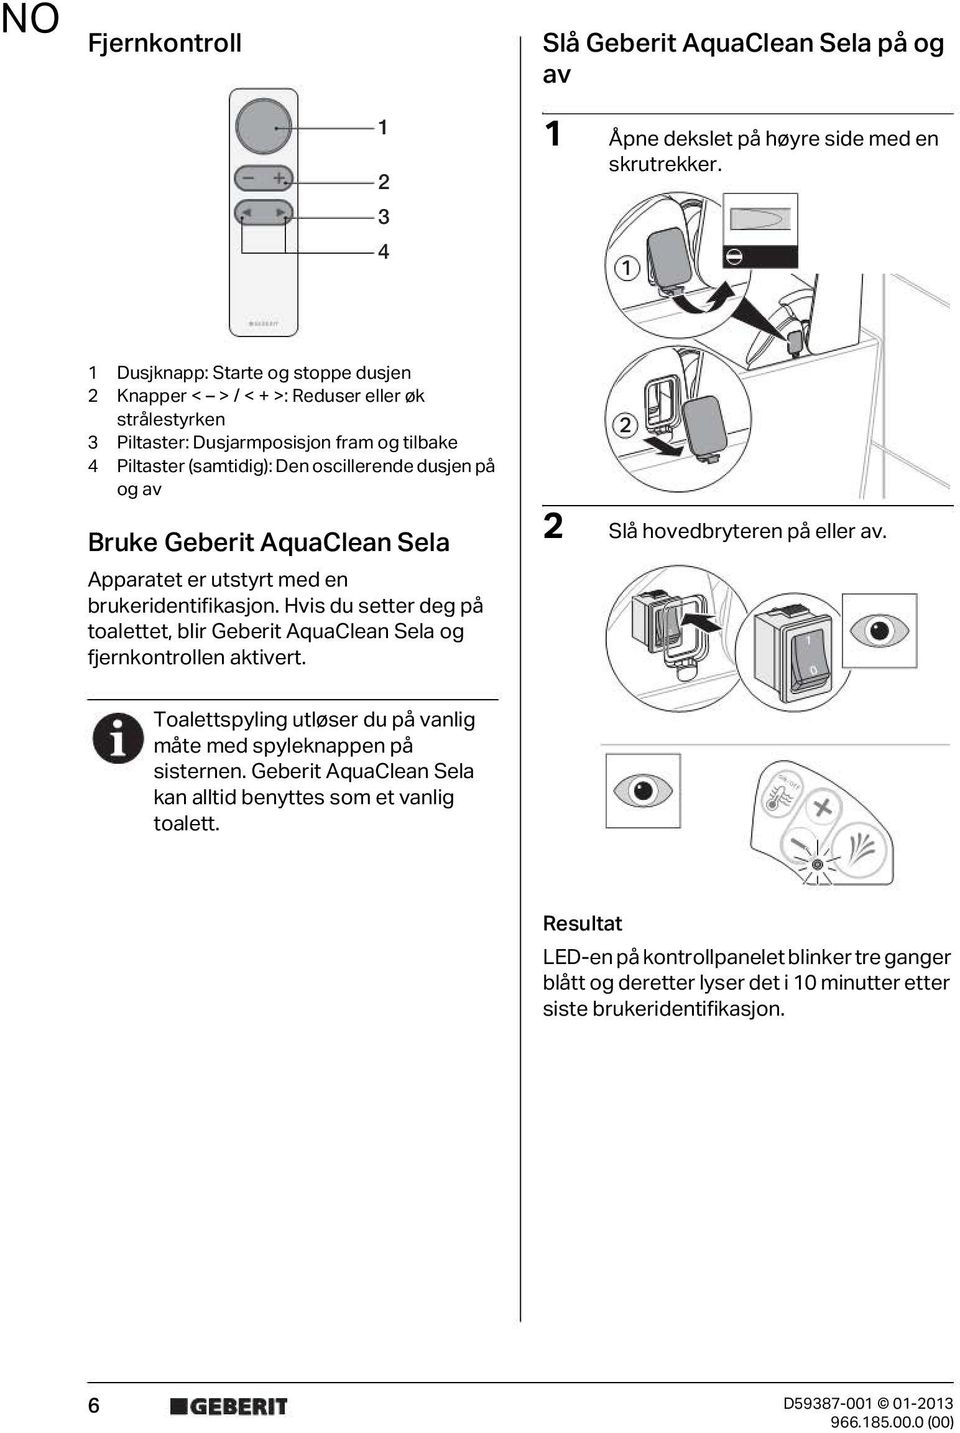 Bruke Geberit AquaClean Sela Apparatet er utstyrt med en brukeridentifikasjon. Hvis du setter deg på toalettet, blir Geberit AquaClean Sela og fjernkontrollen aktivert.